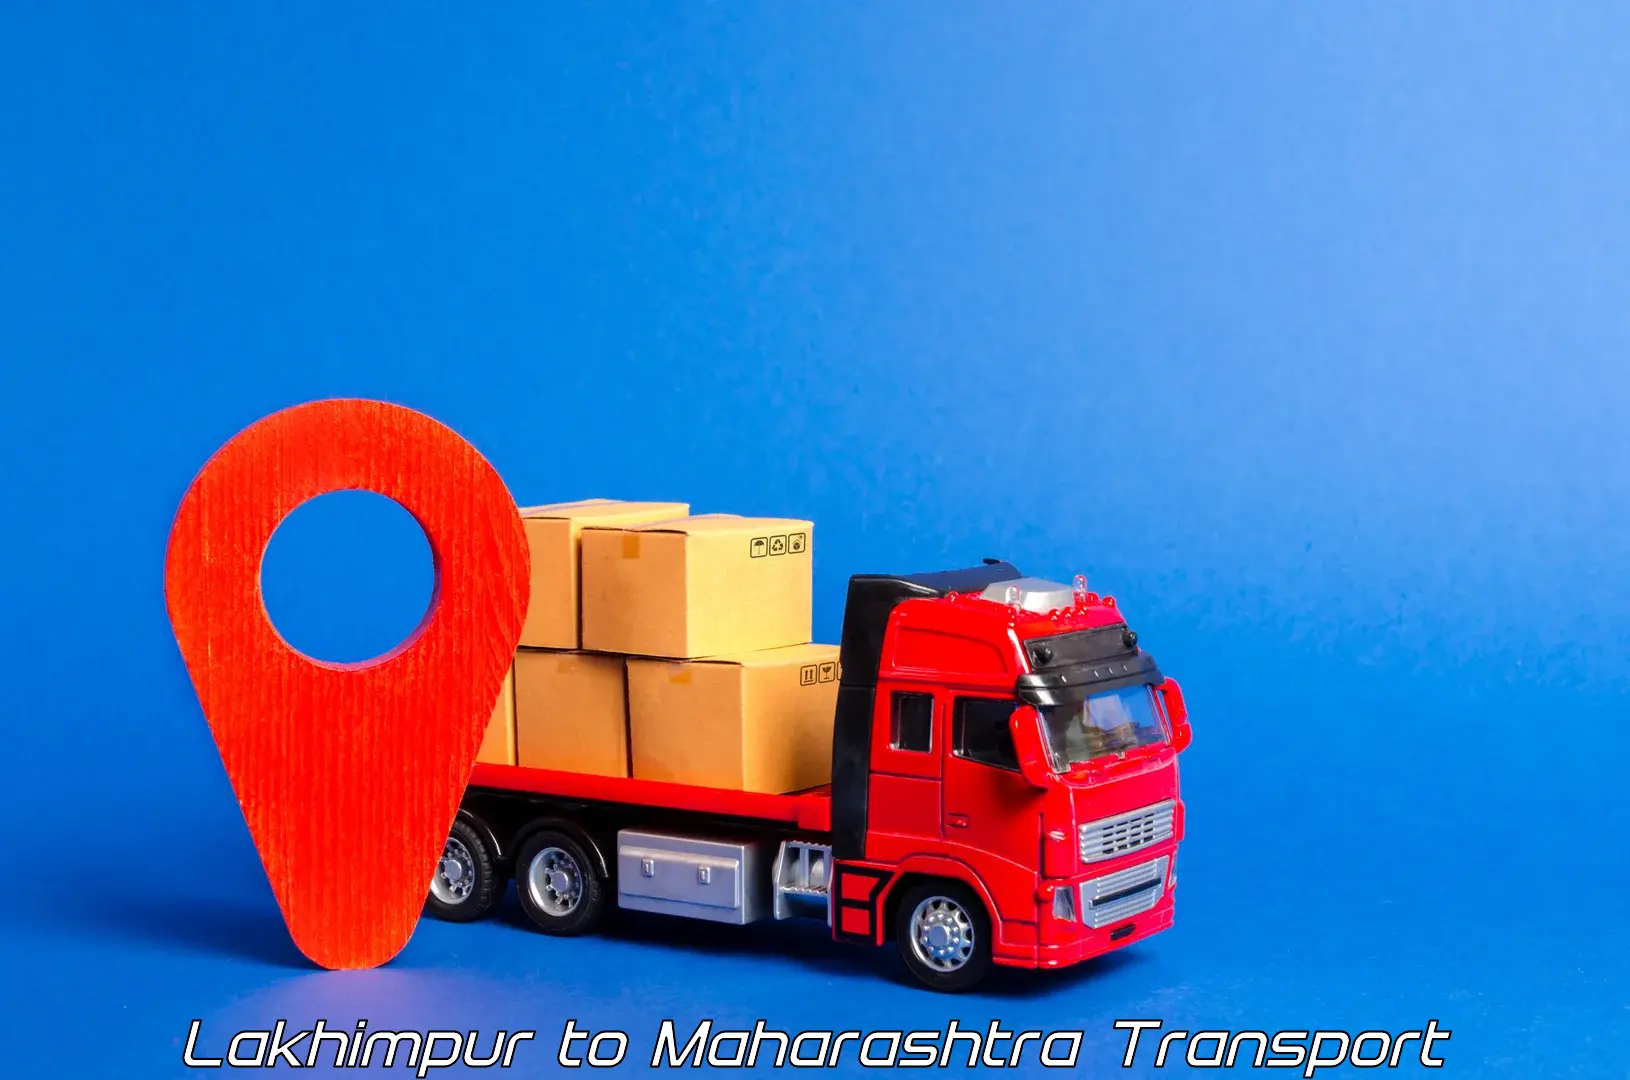 Furniture transport service in Lakhimpur to Savitribai Phule Pune University